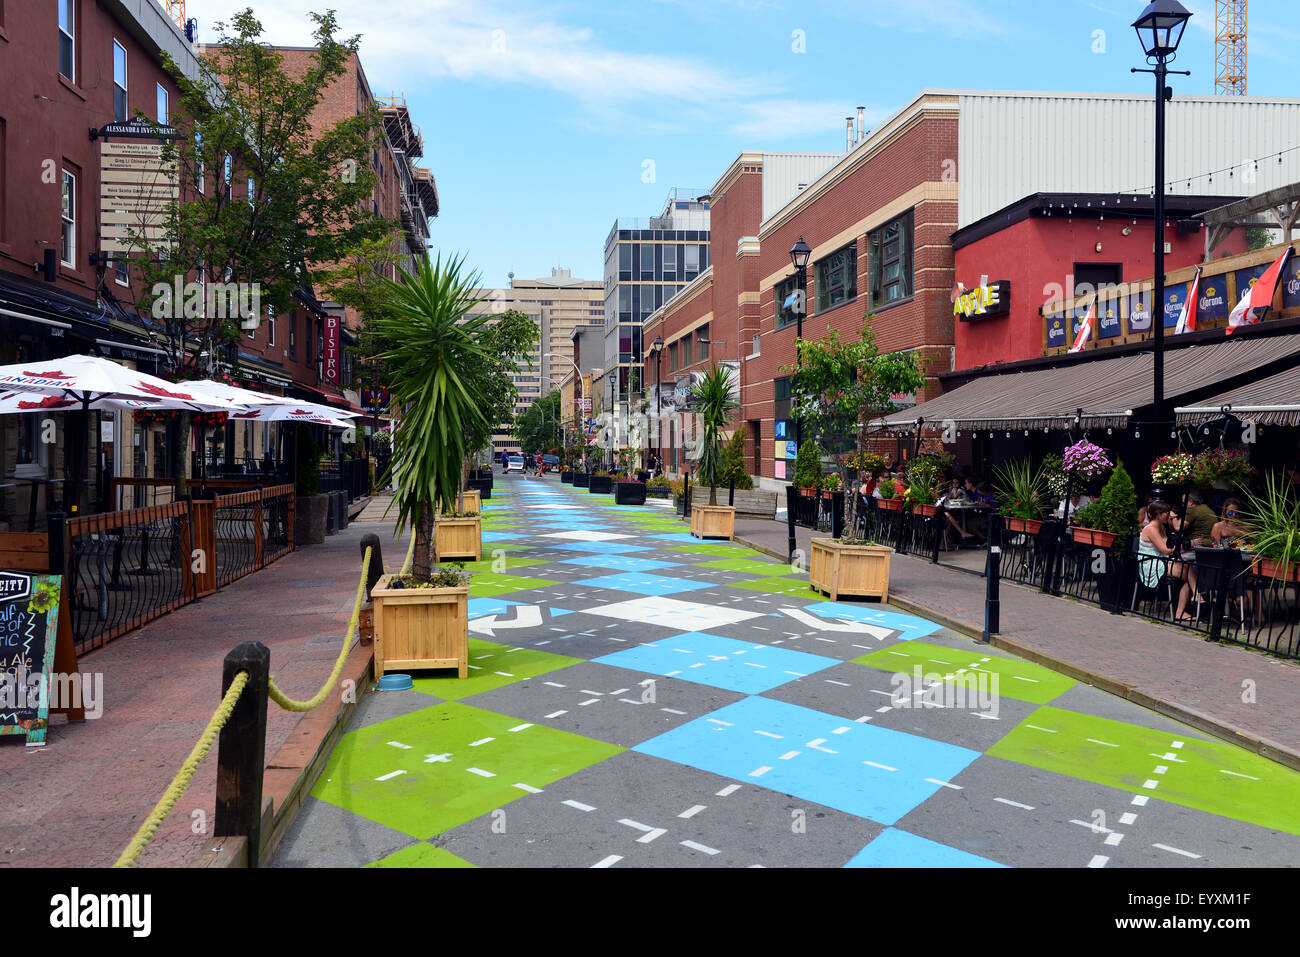 Halifax, Canadá - 3 de agosto de 2015: Argyle Street en Halifax, Nova Scotia, recién pintada con diseño en Argyle Street Foto de stock